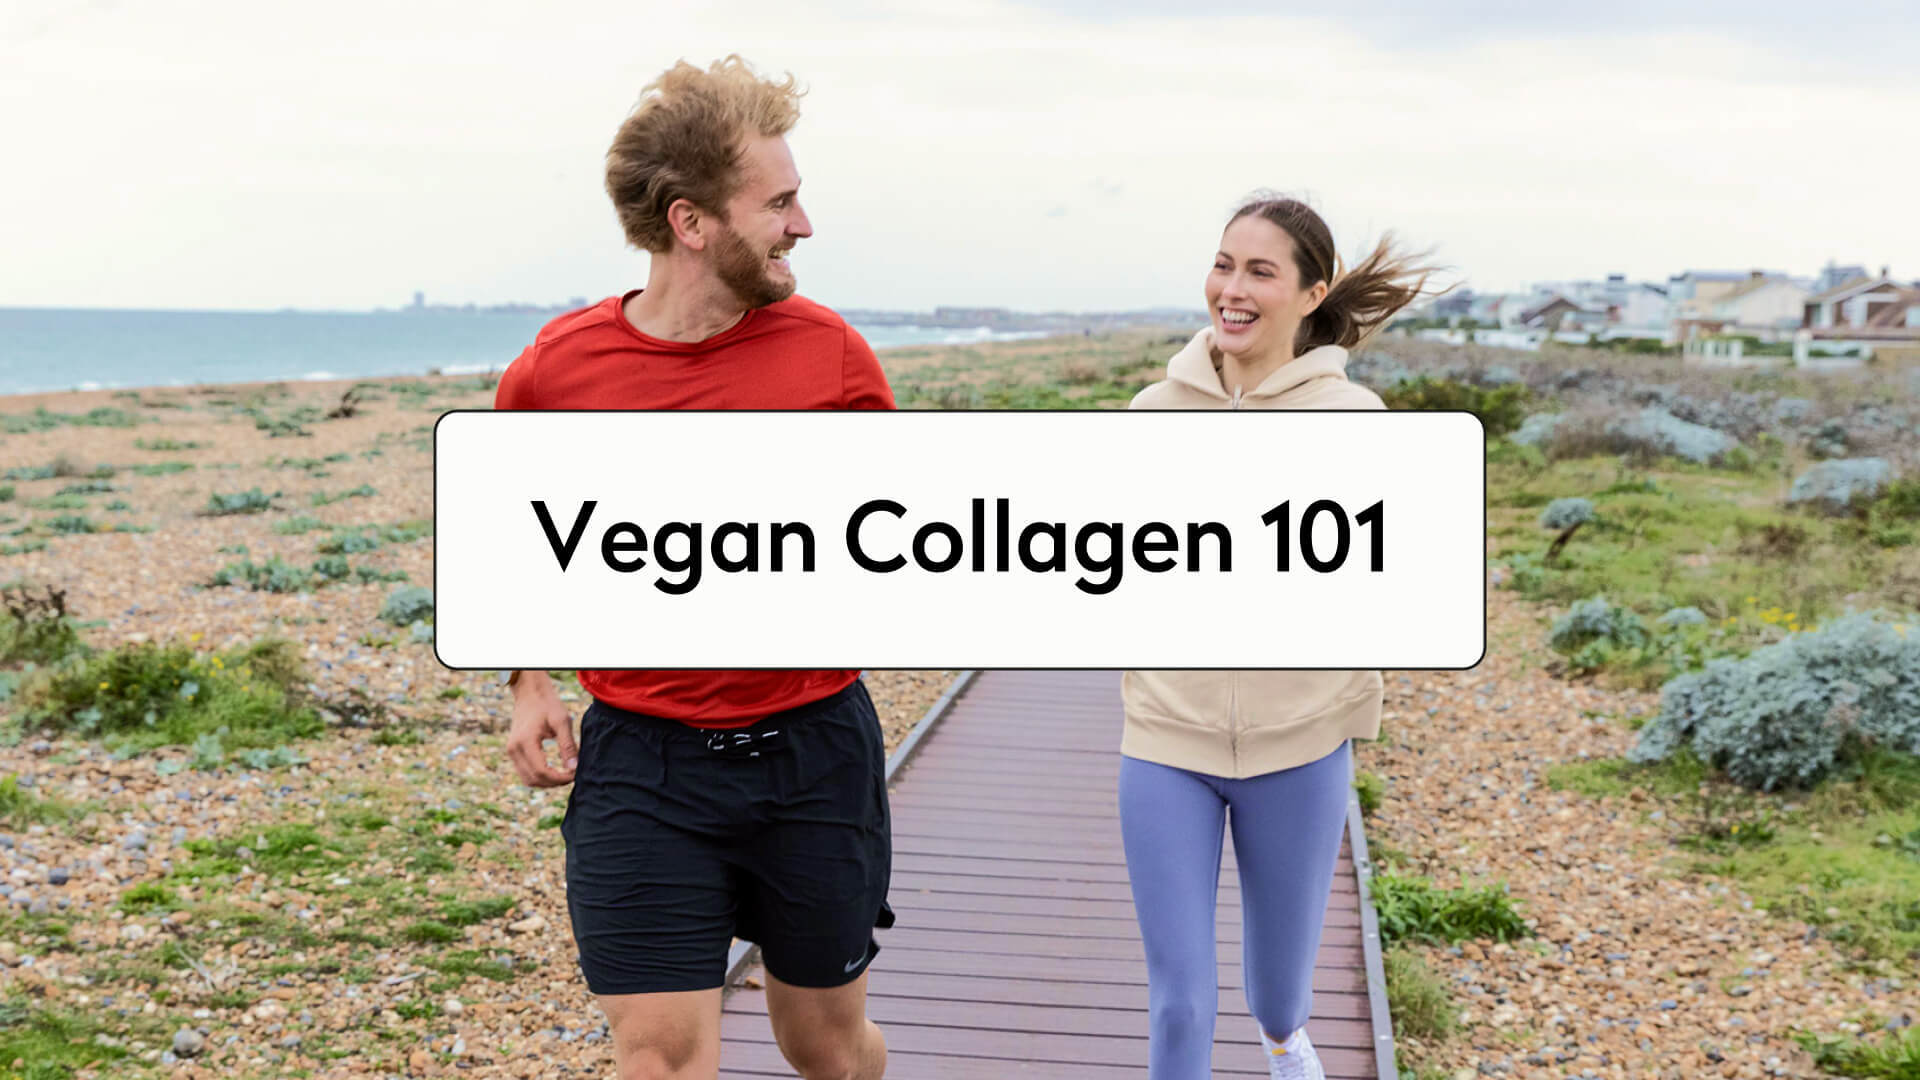 What Is Vegan Collagen?